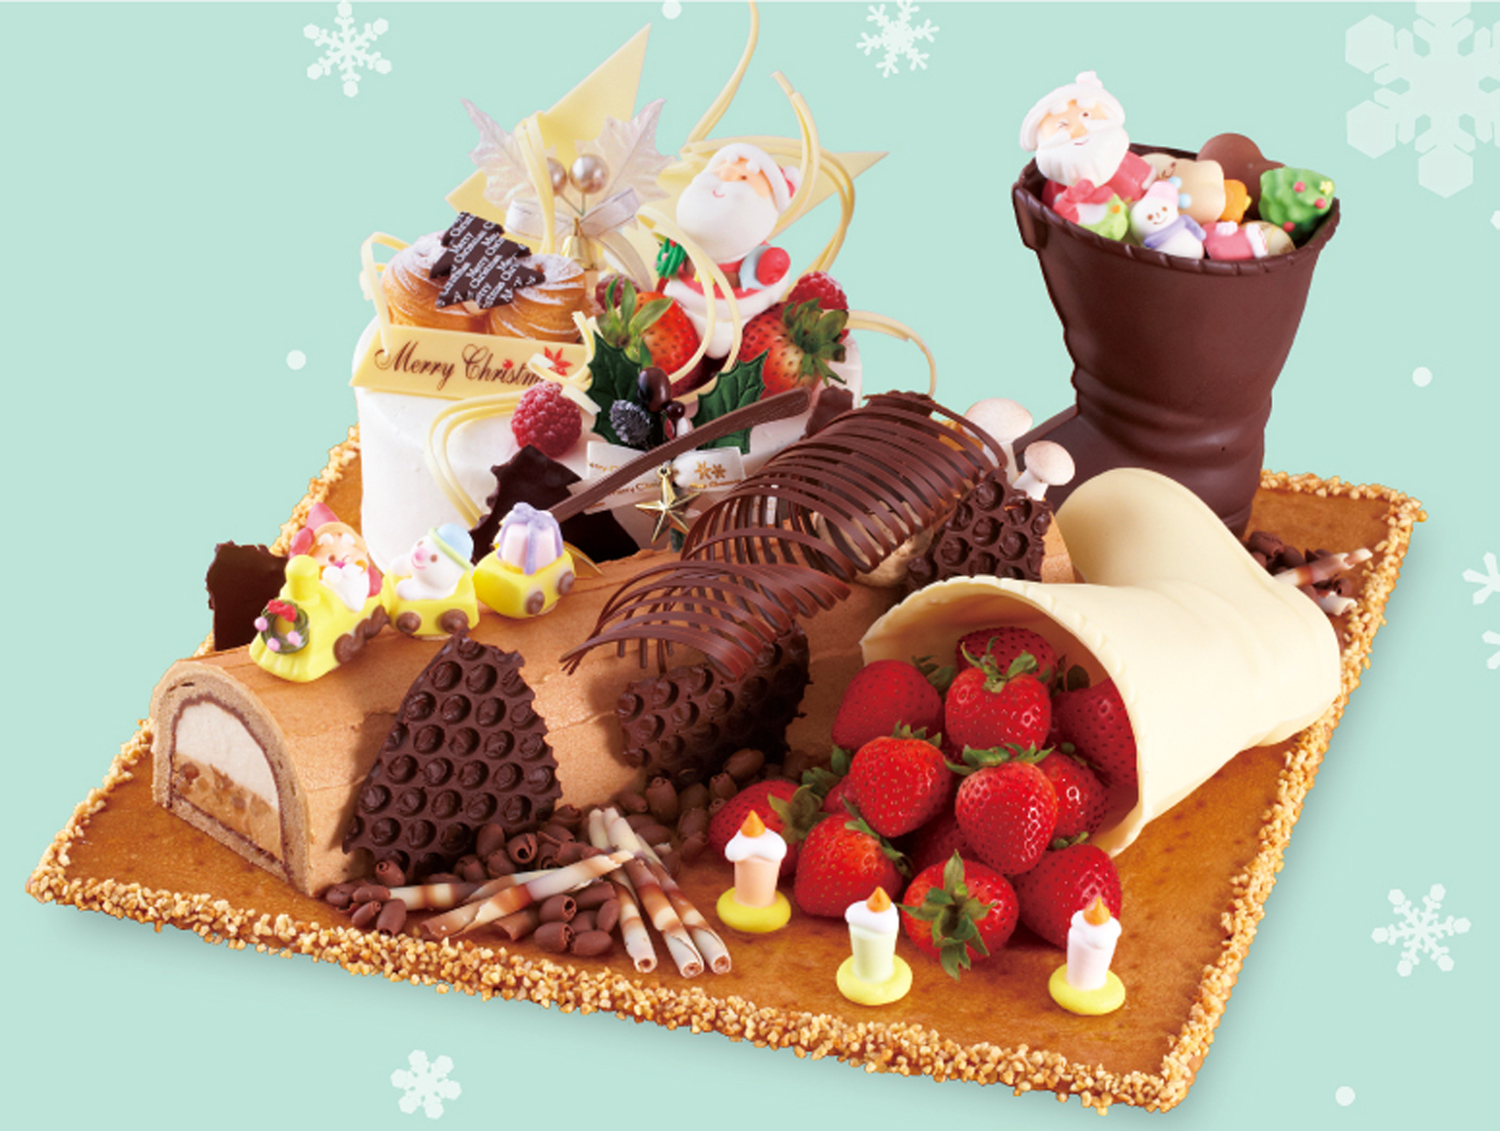 ホテル イースト21東京 ホテル特製 ベーカリーショップ アン クリスマスケーキ ご予約受付中 オークラ ホテルズ リゾーツのプレスリリース